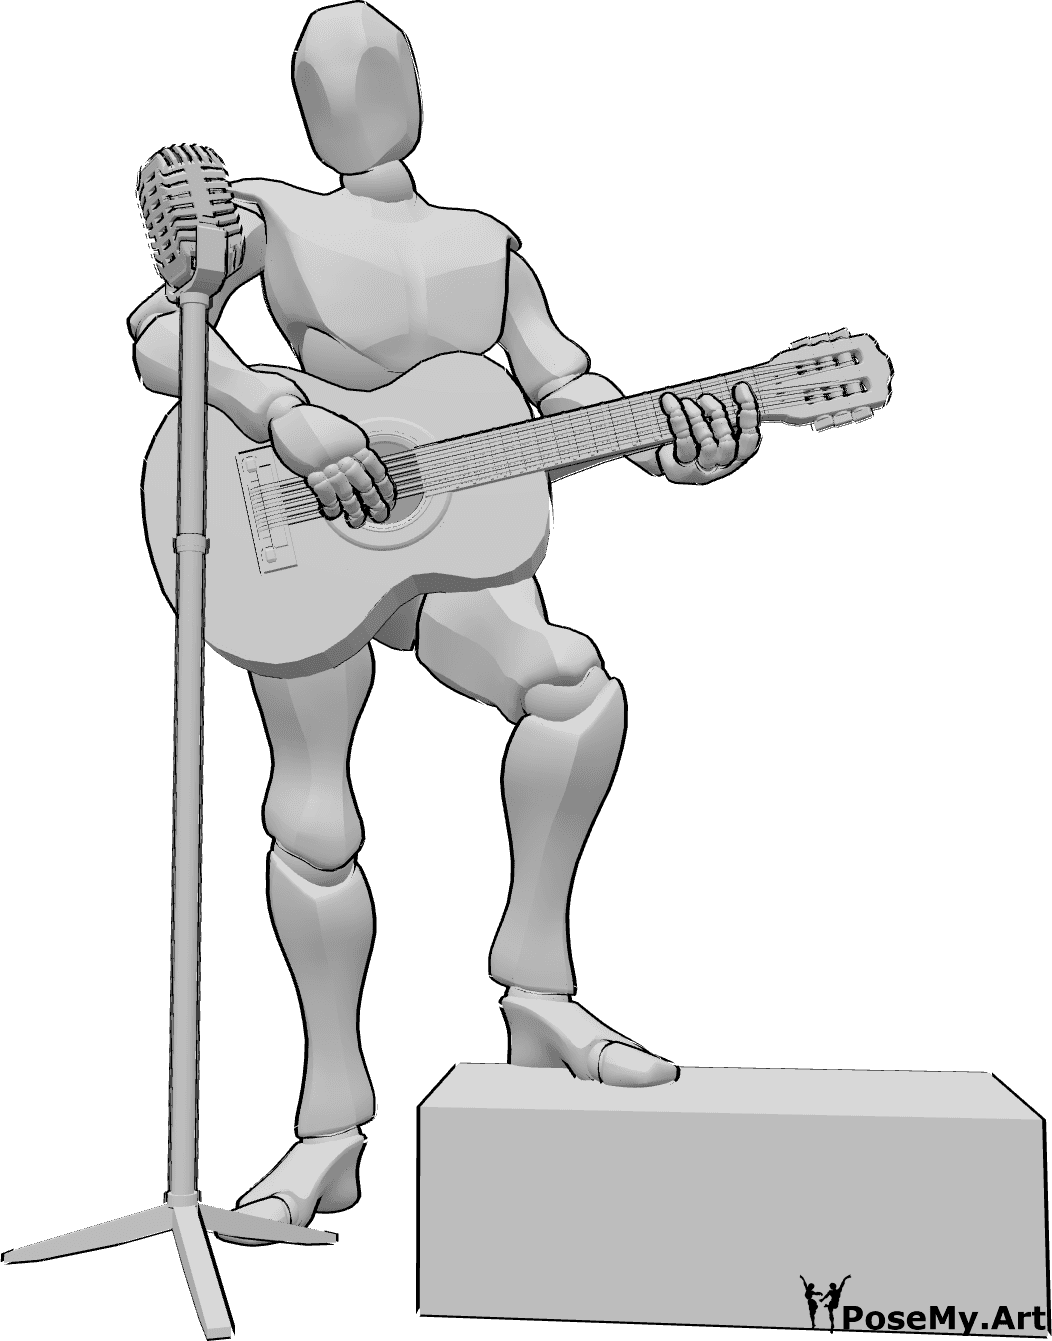 Referência de poses- Pose de guitarra em concerto - Homem toca guitarra e canta no palco, referência de desenho de guitarra